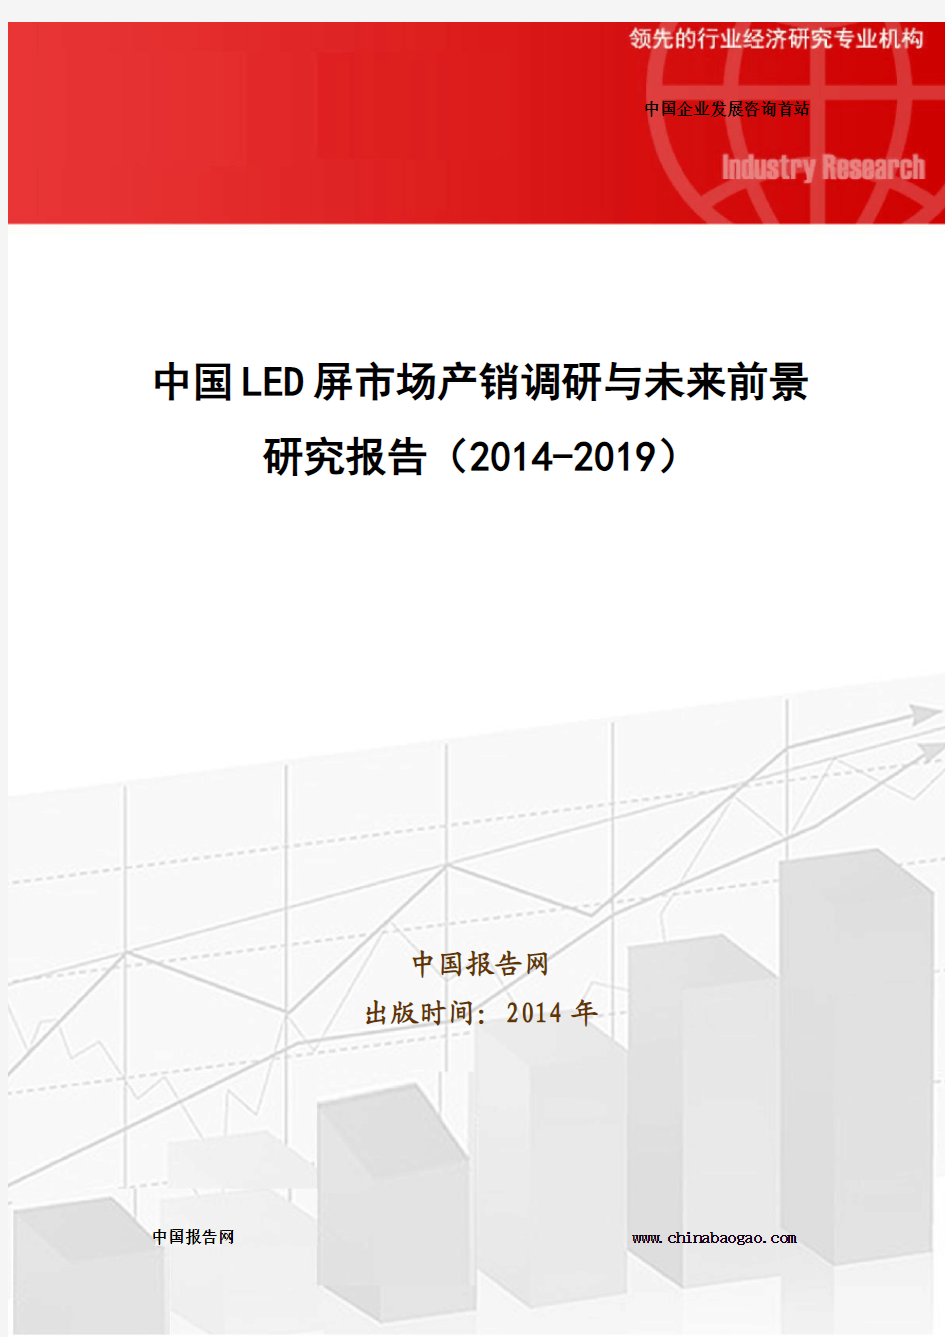 中国LED屏市场产销调研与未来前景研究报告(2014-2019)